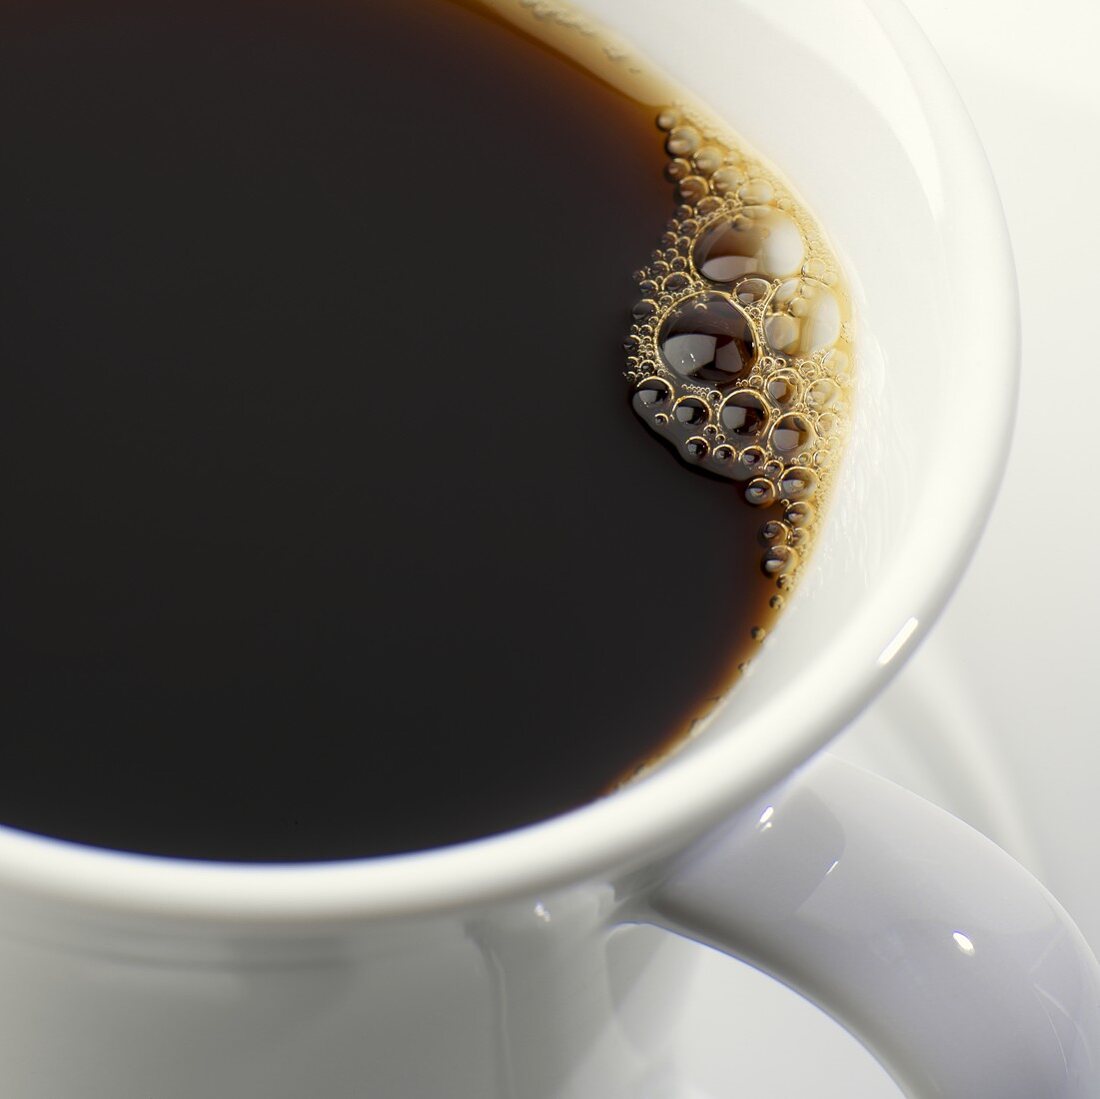 Schwarzer Kaffee mit Luftblasen